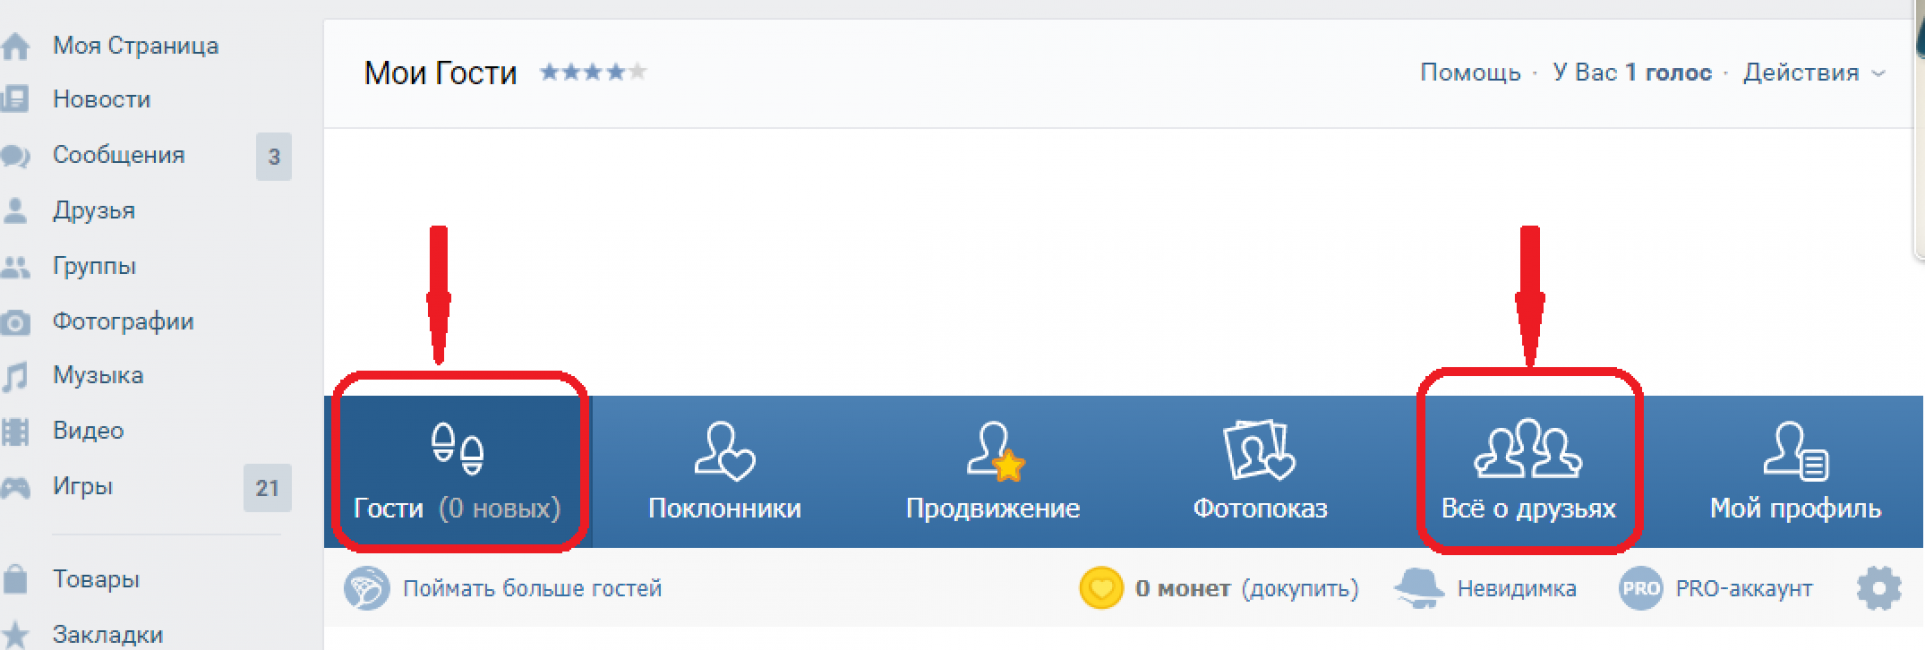 Відвідувачі ВКонтакте: як дізнатися хто заходив на мою сторінку?